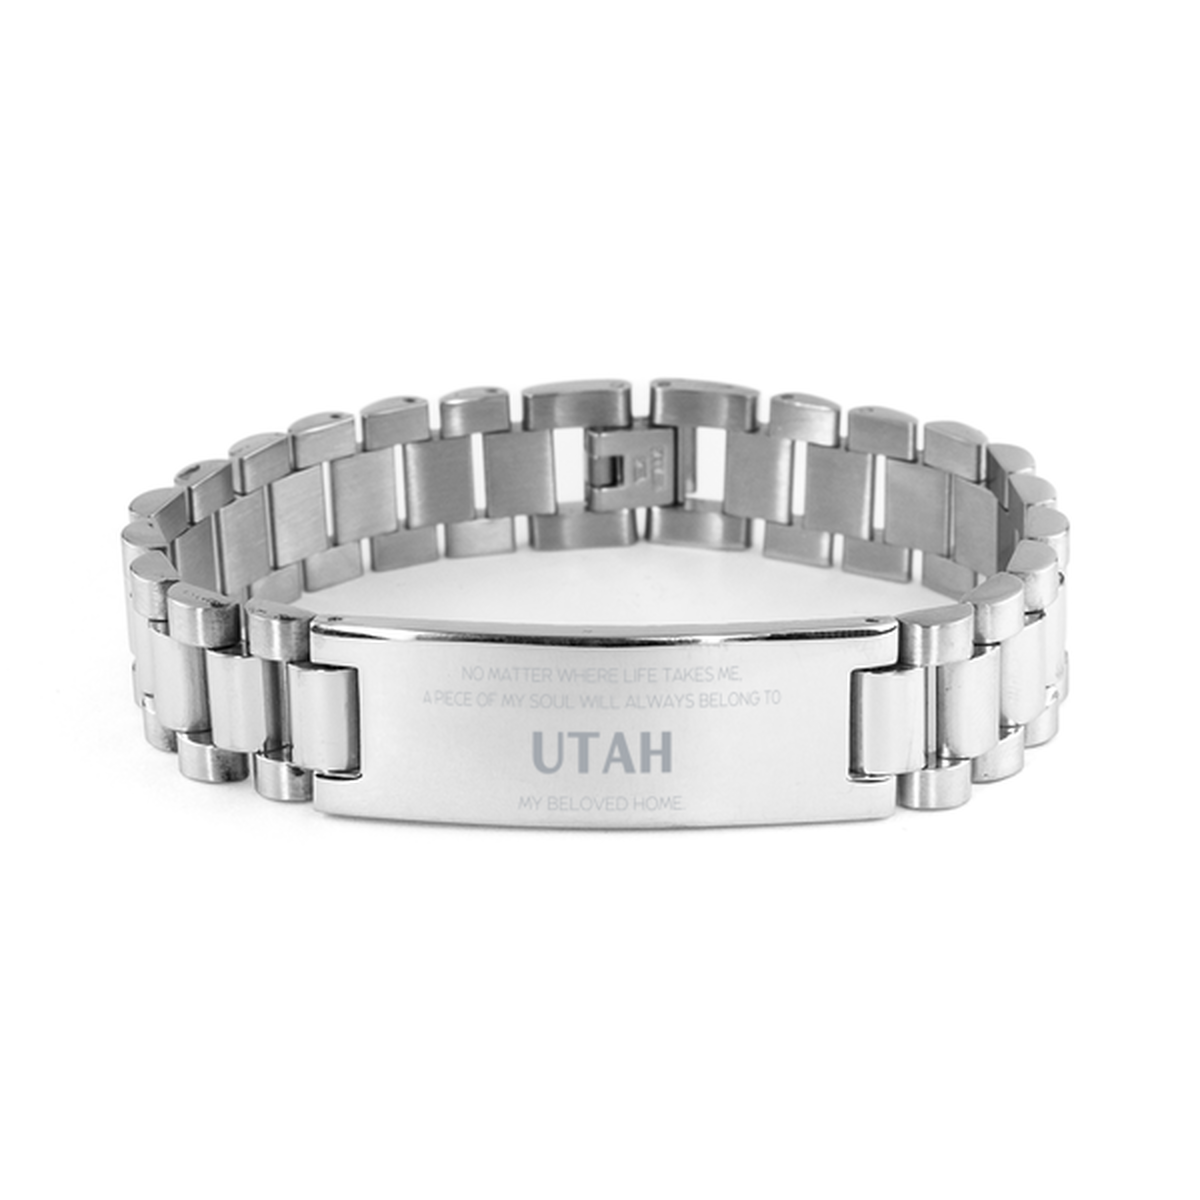 Love Utah State Gifts, My soul will always belong to Utah, Proud Ladder Stainless Steel Bracelet, Birthday Unique Gifts For Utah Men, Women, Friends